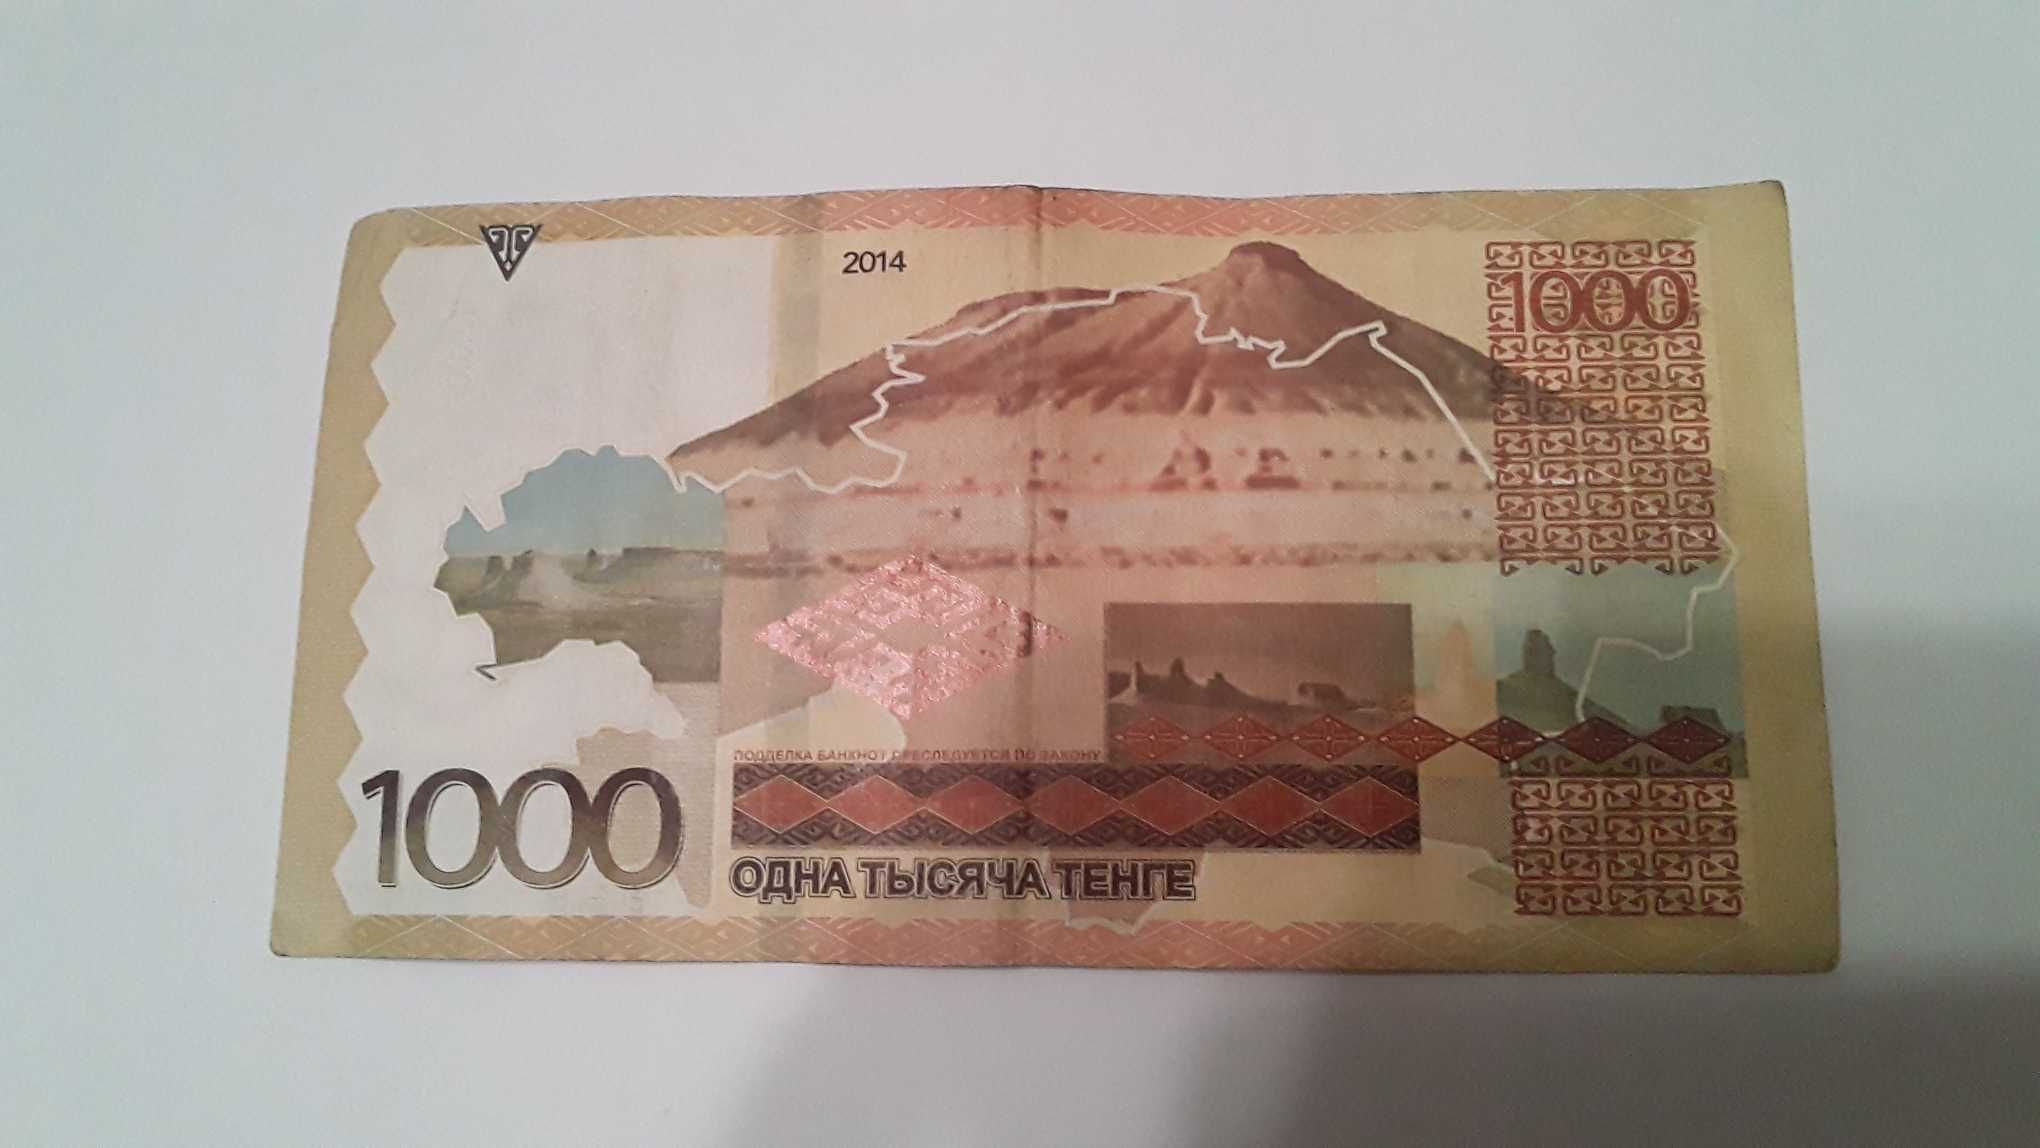 Продам банкноту 1000 тенге 2014 года. Замещение. Серия ЛЛ